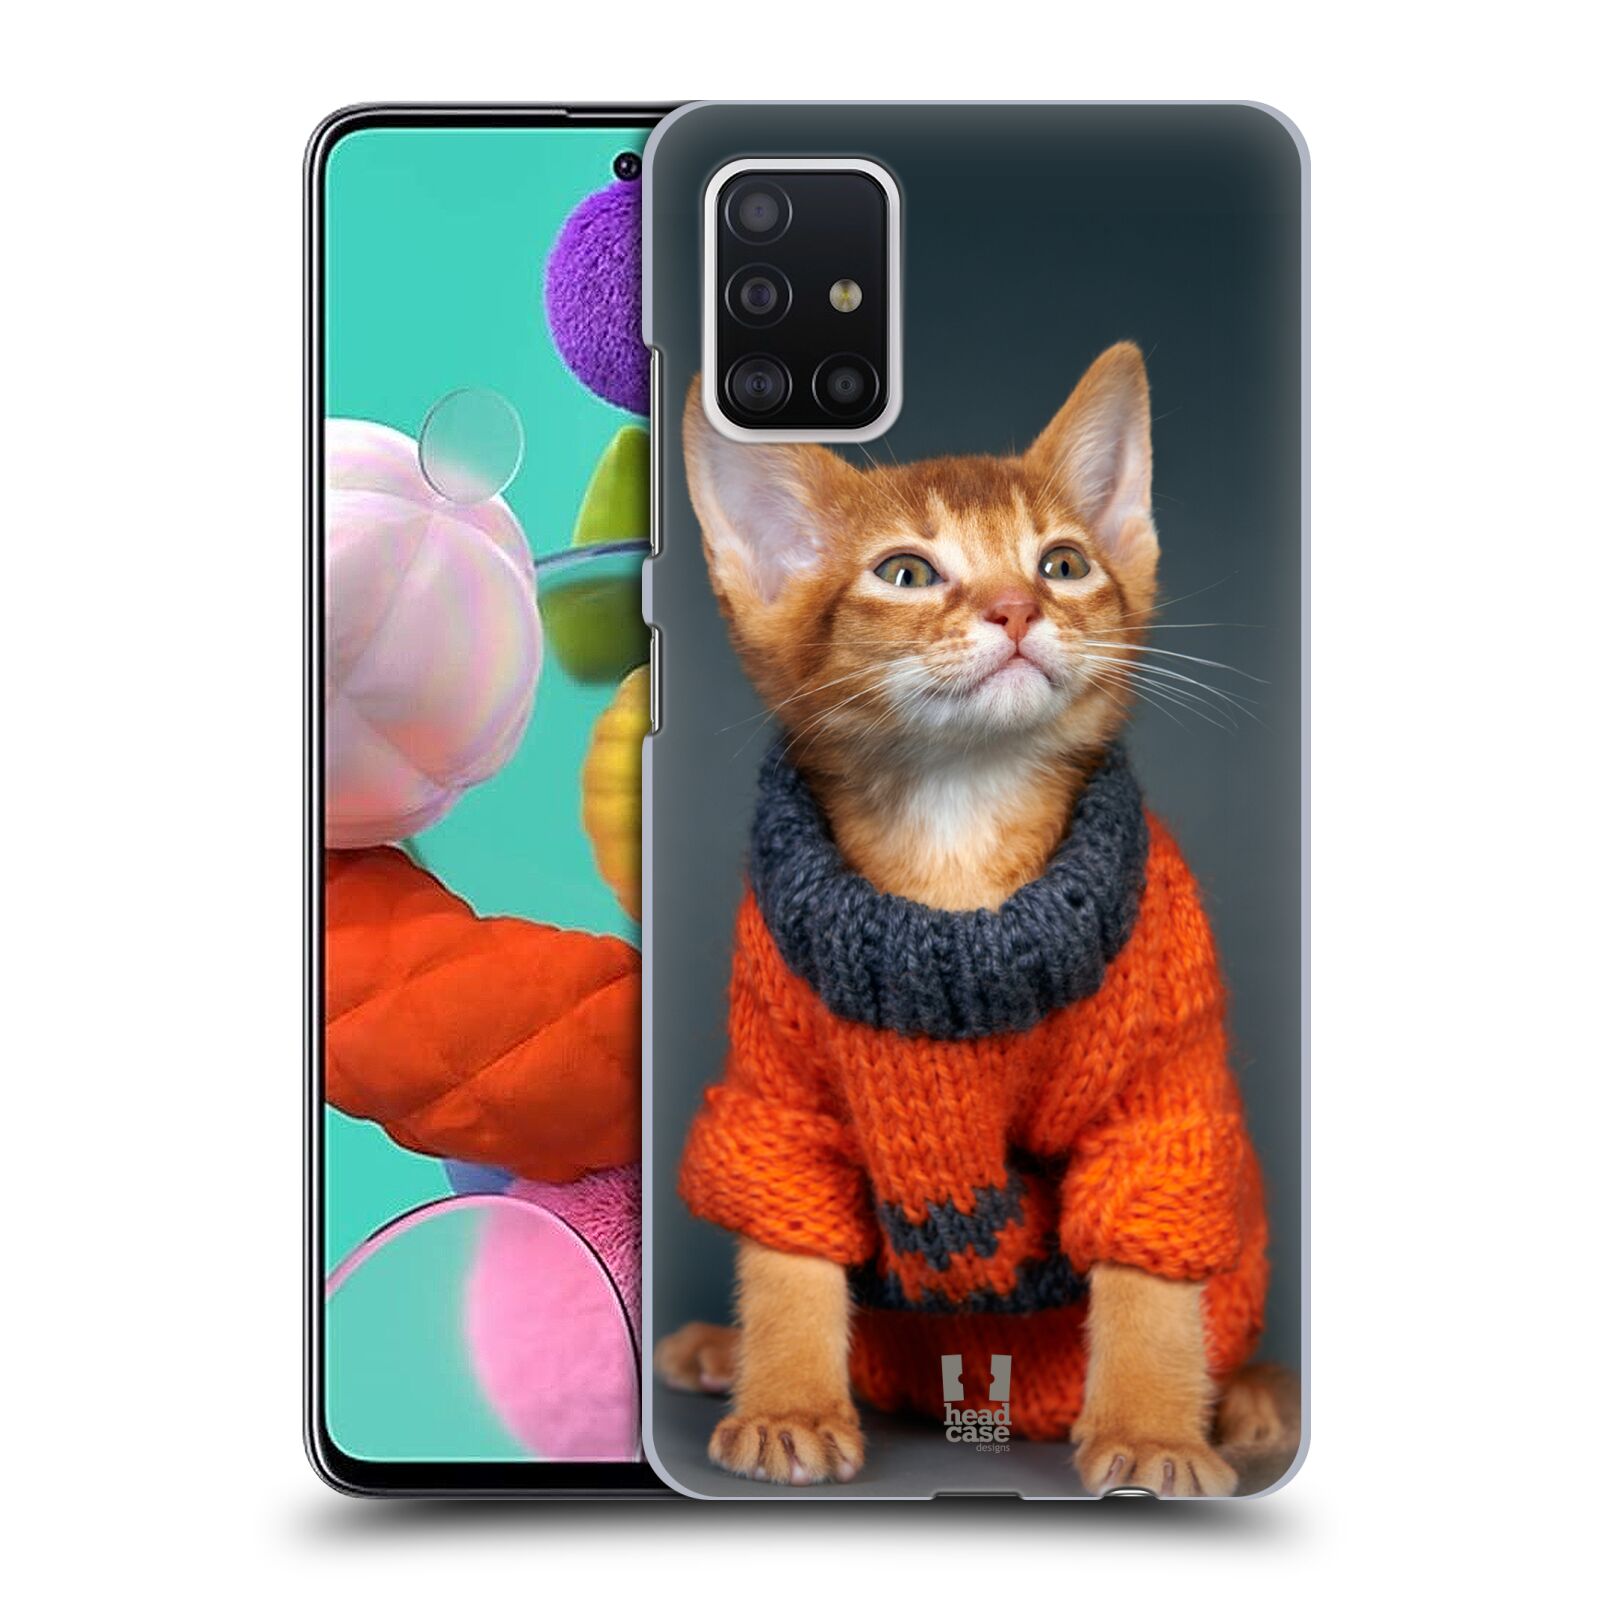 Pouzdro na mobil Samsung Galaxy A51 - HEAD CASE - vzor Legrační zvířátka kočička v oranžovém svetru